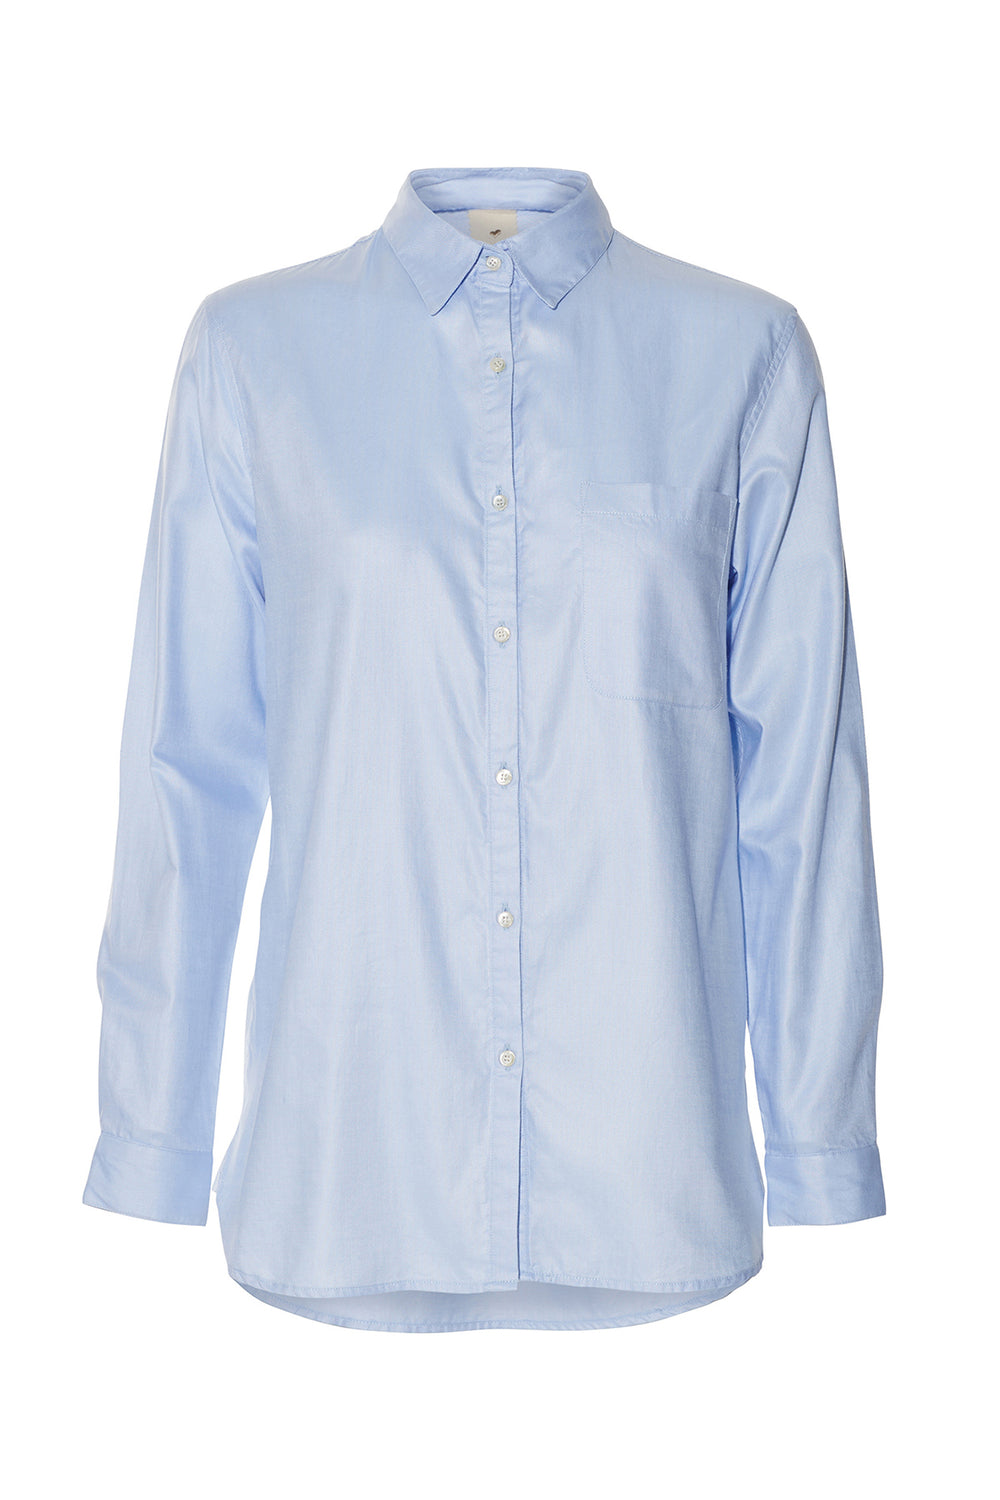 Heartmade Marlis shirt HM SHIRTS 21 Light blue